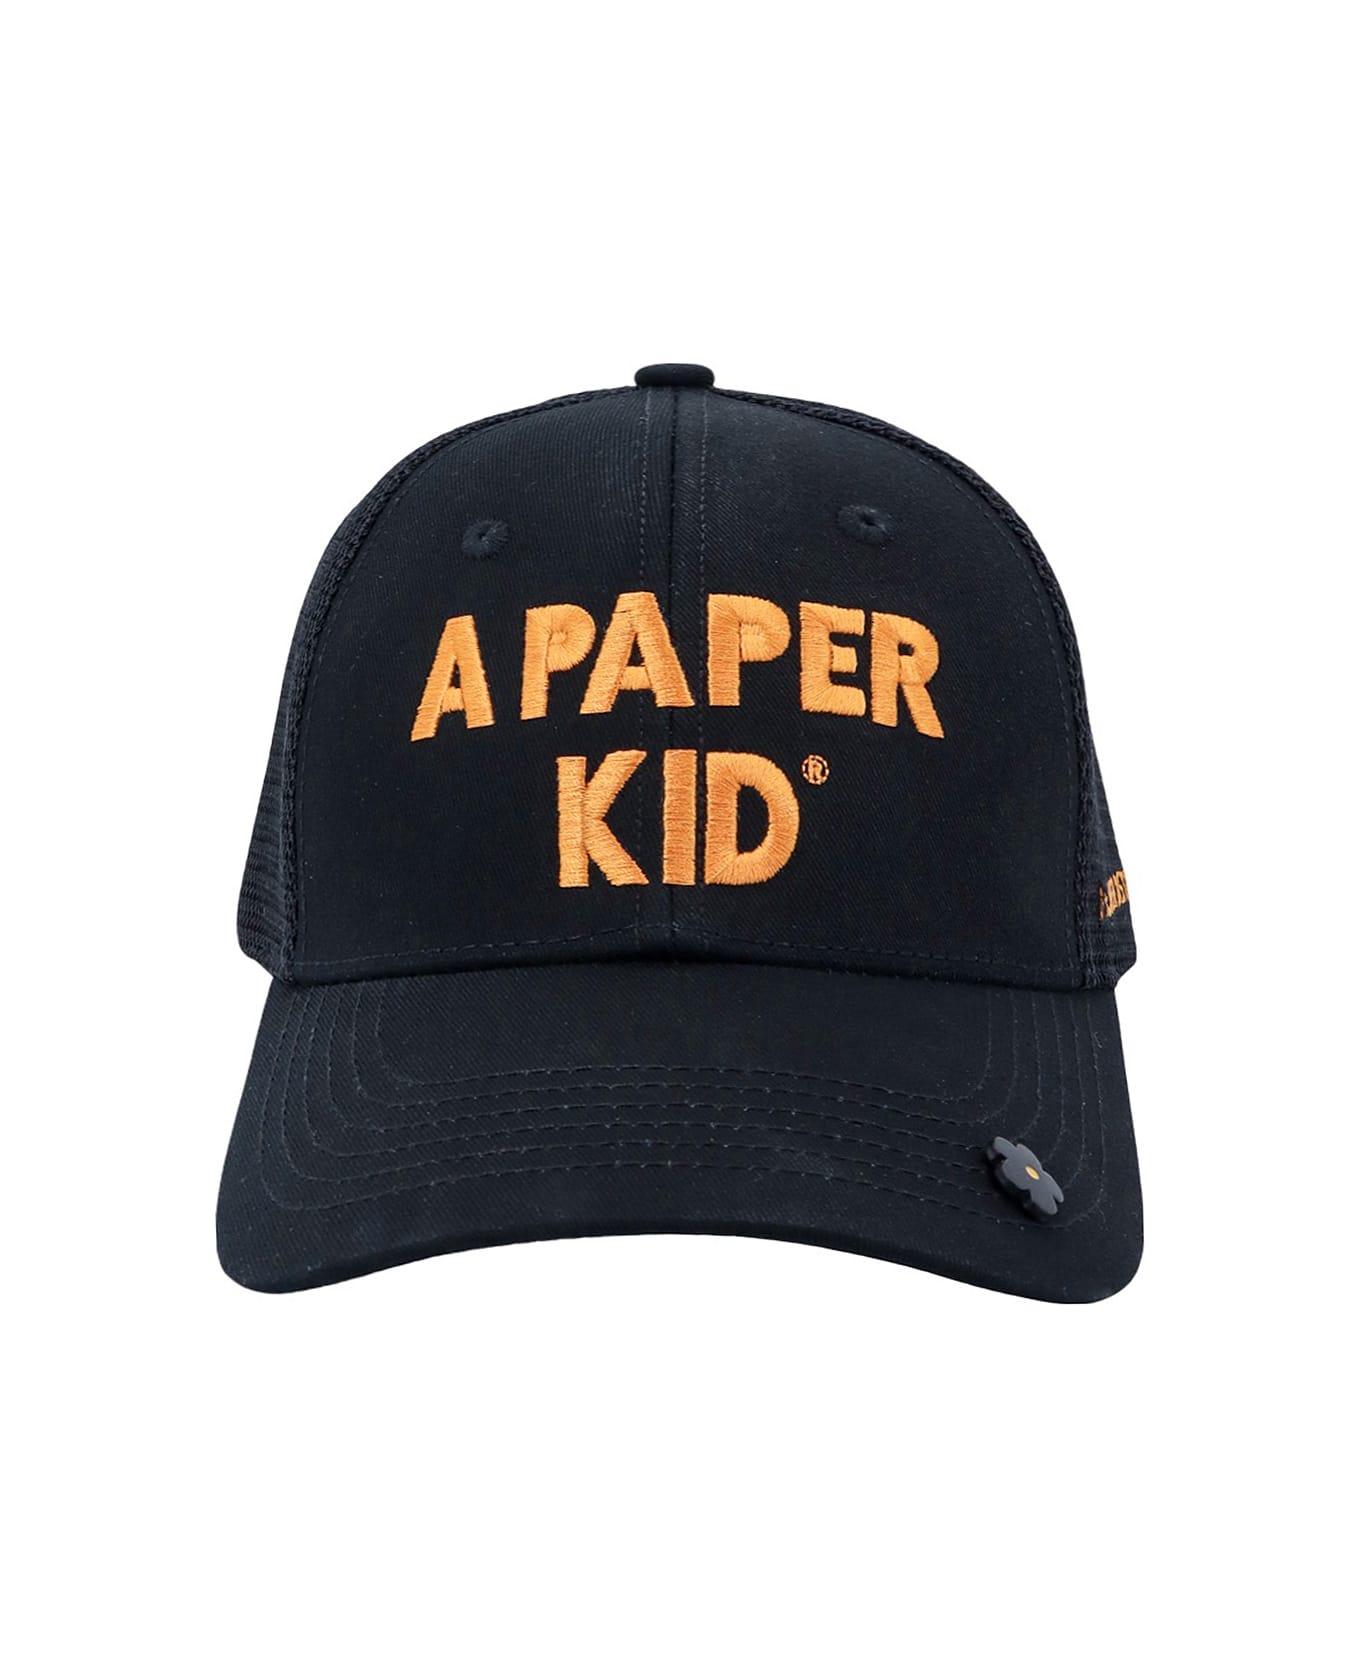 A Paper Kid Hat - Nero